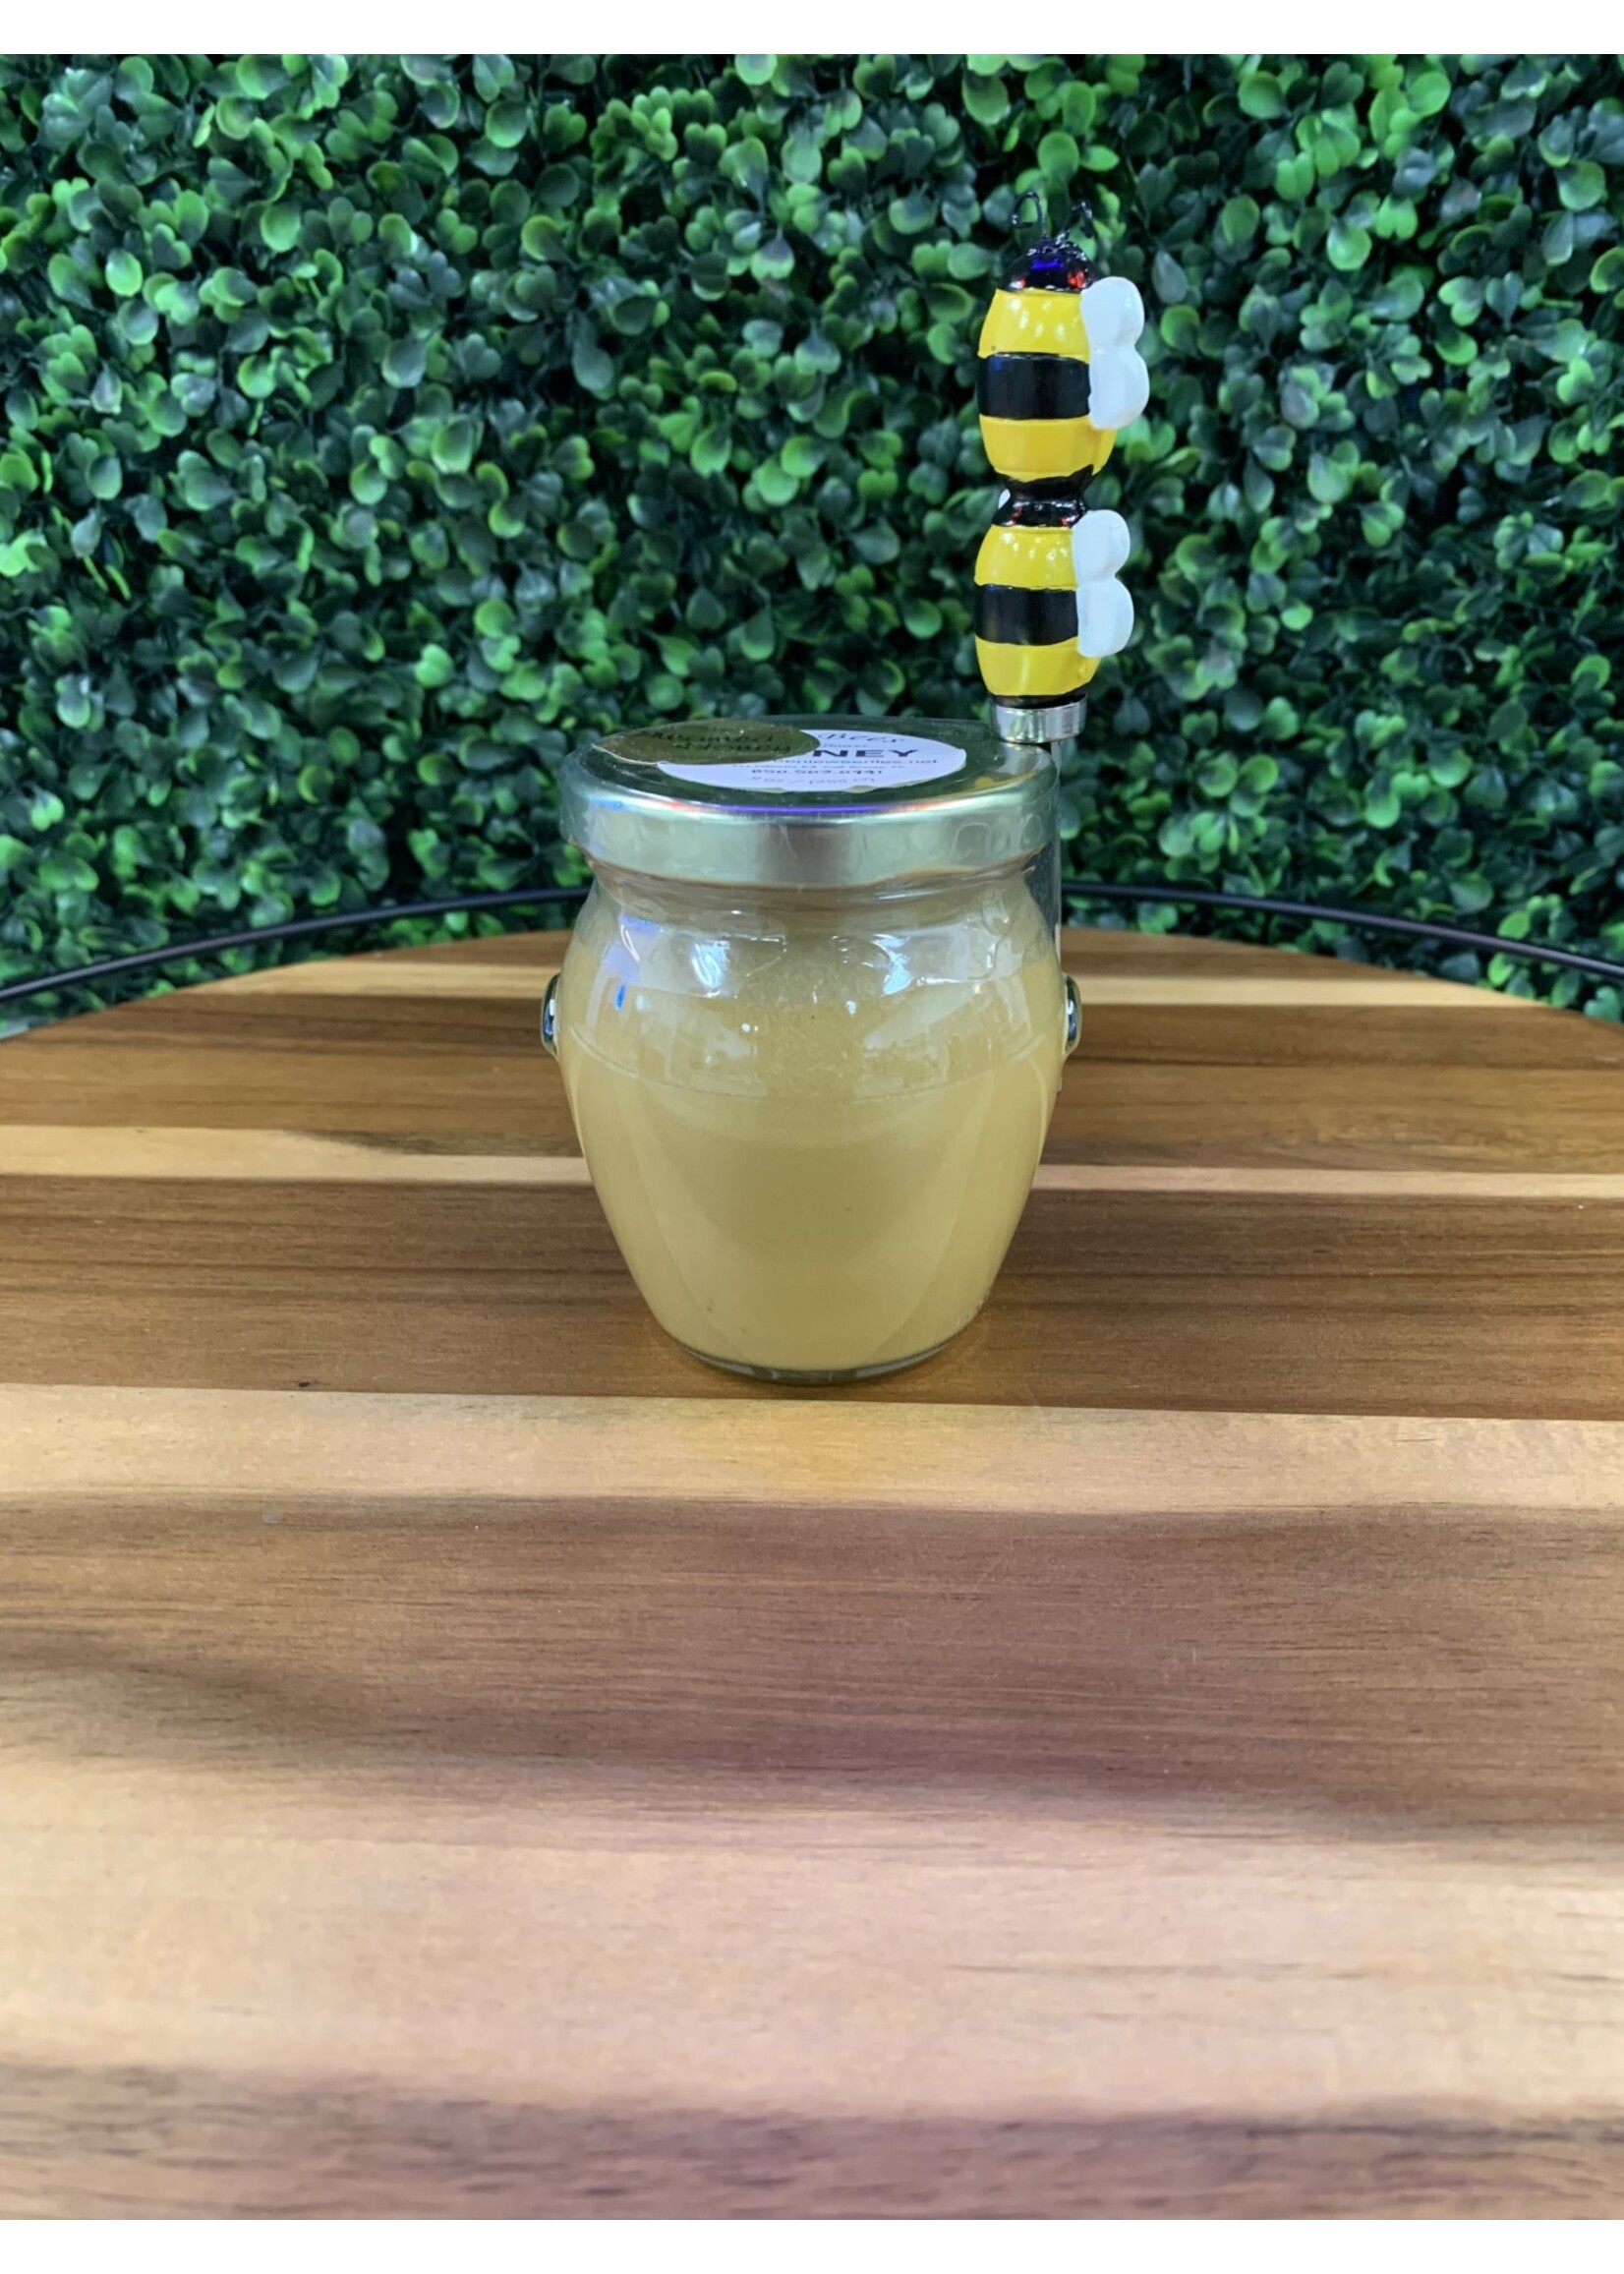 T's Bees Whipped Honey - 9 oz Honey Pot w/Spreader